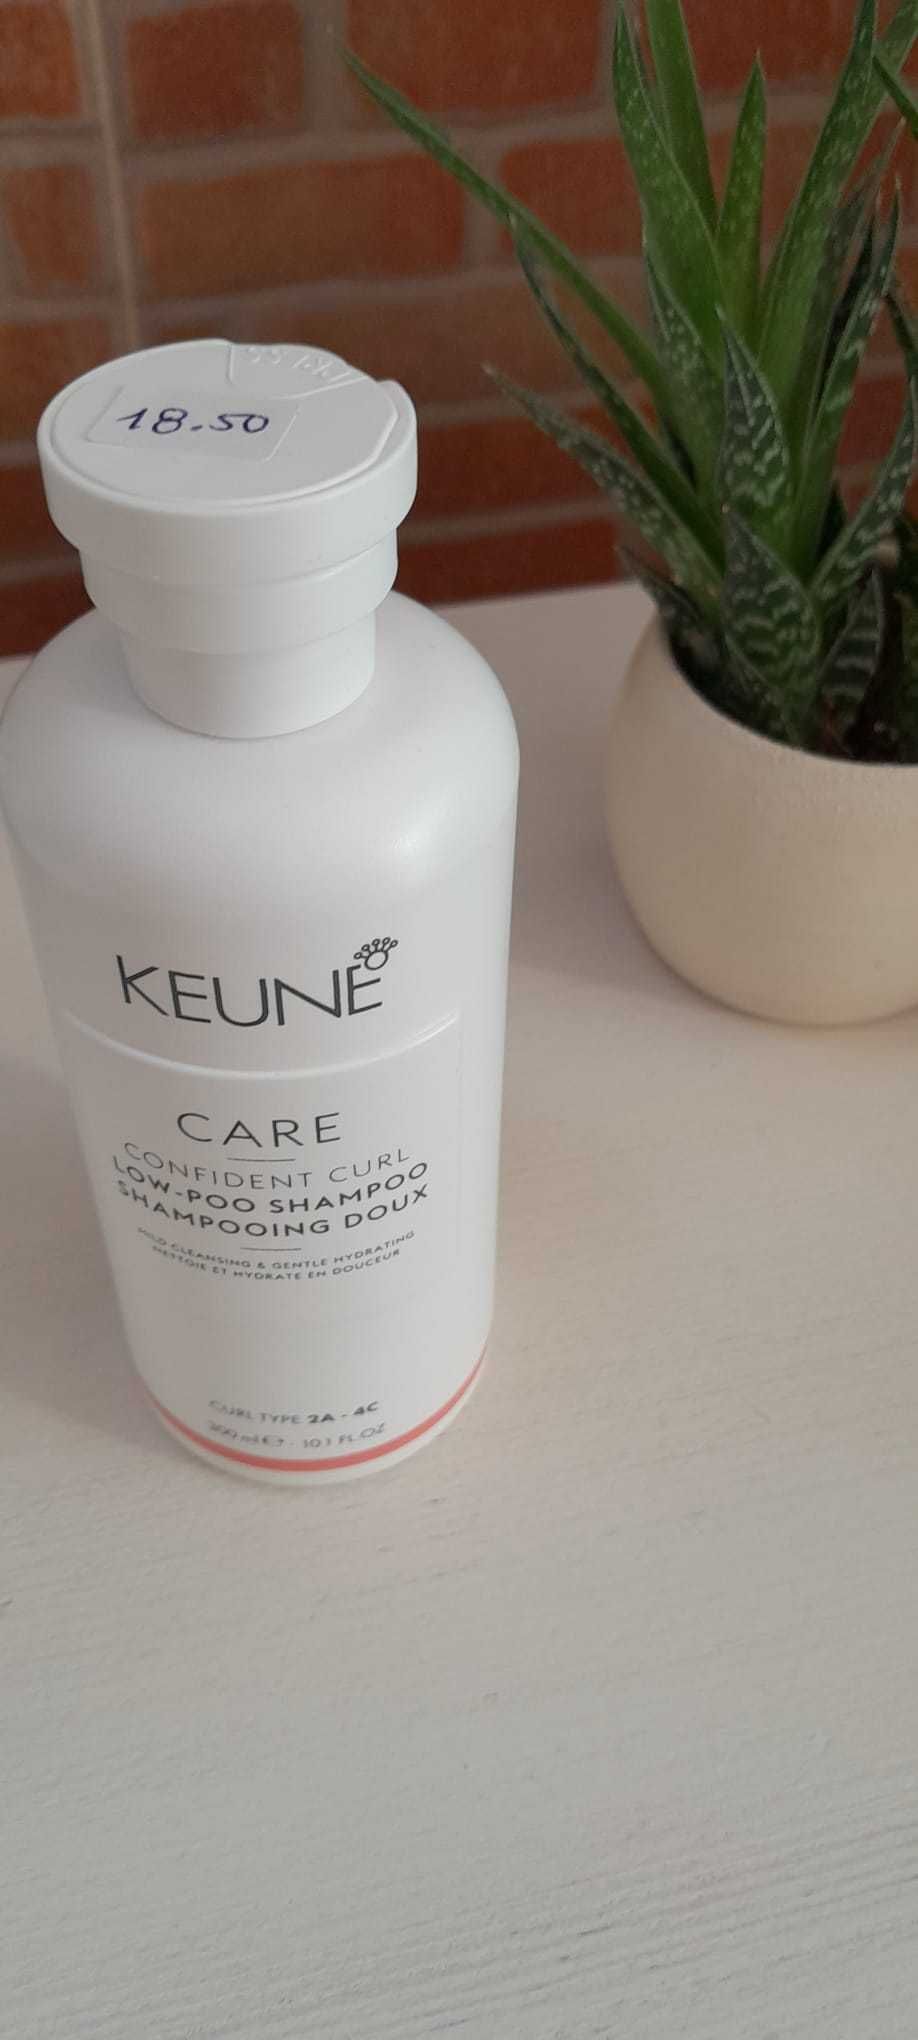 Keune Care Confident Curl Low-Poo Shampoo Shampooing Doux - 300ml Novo